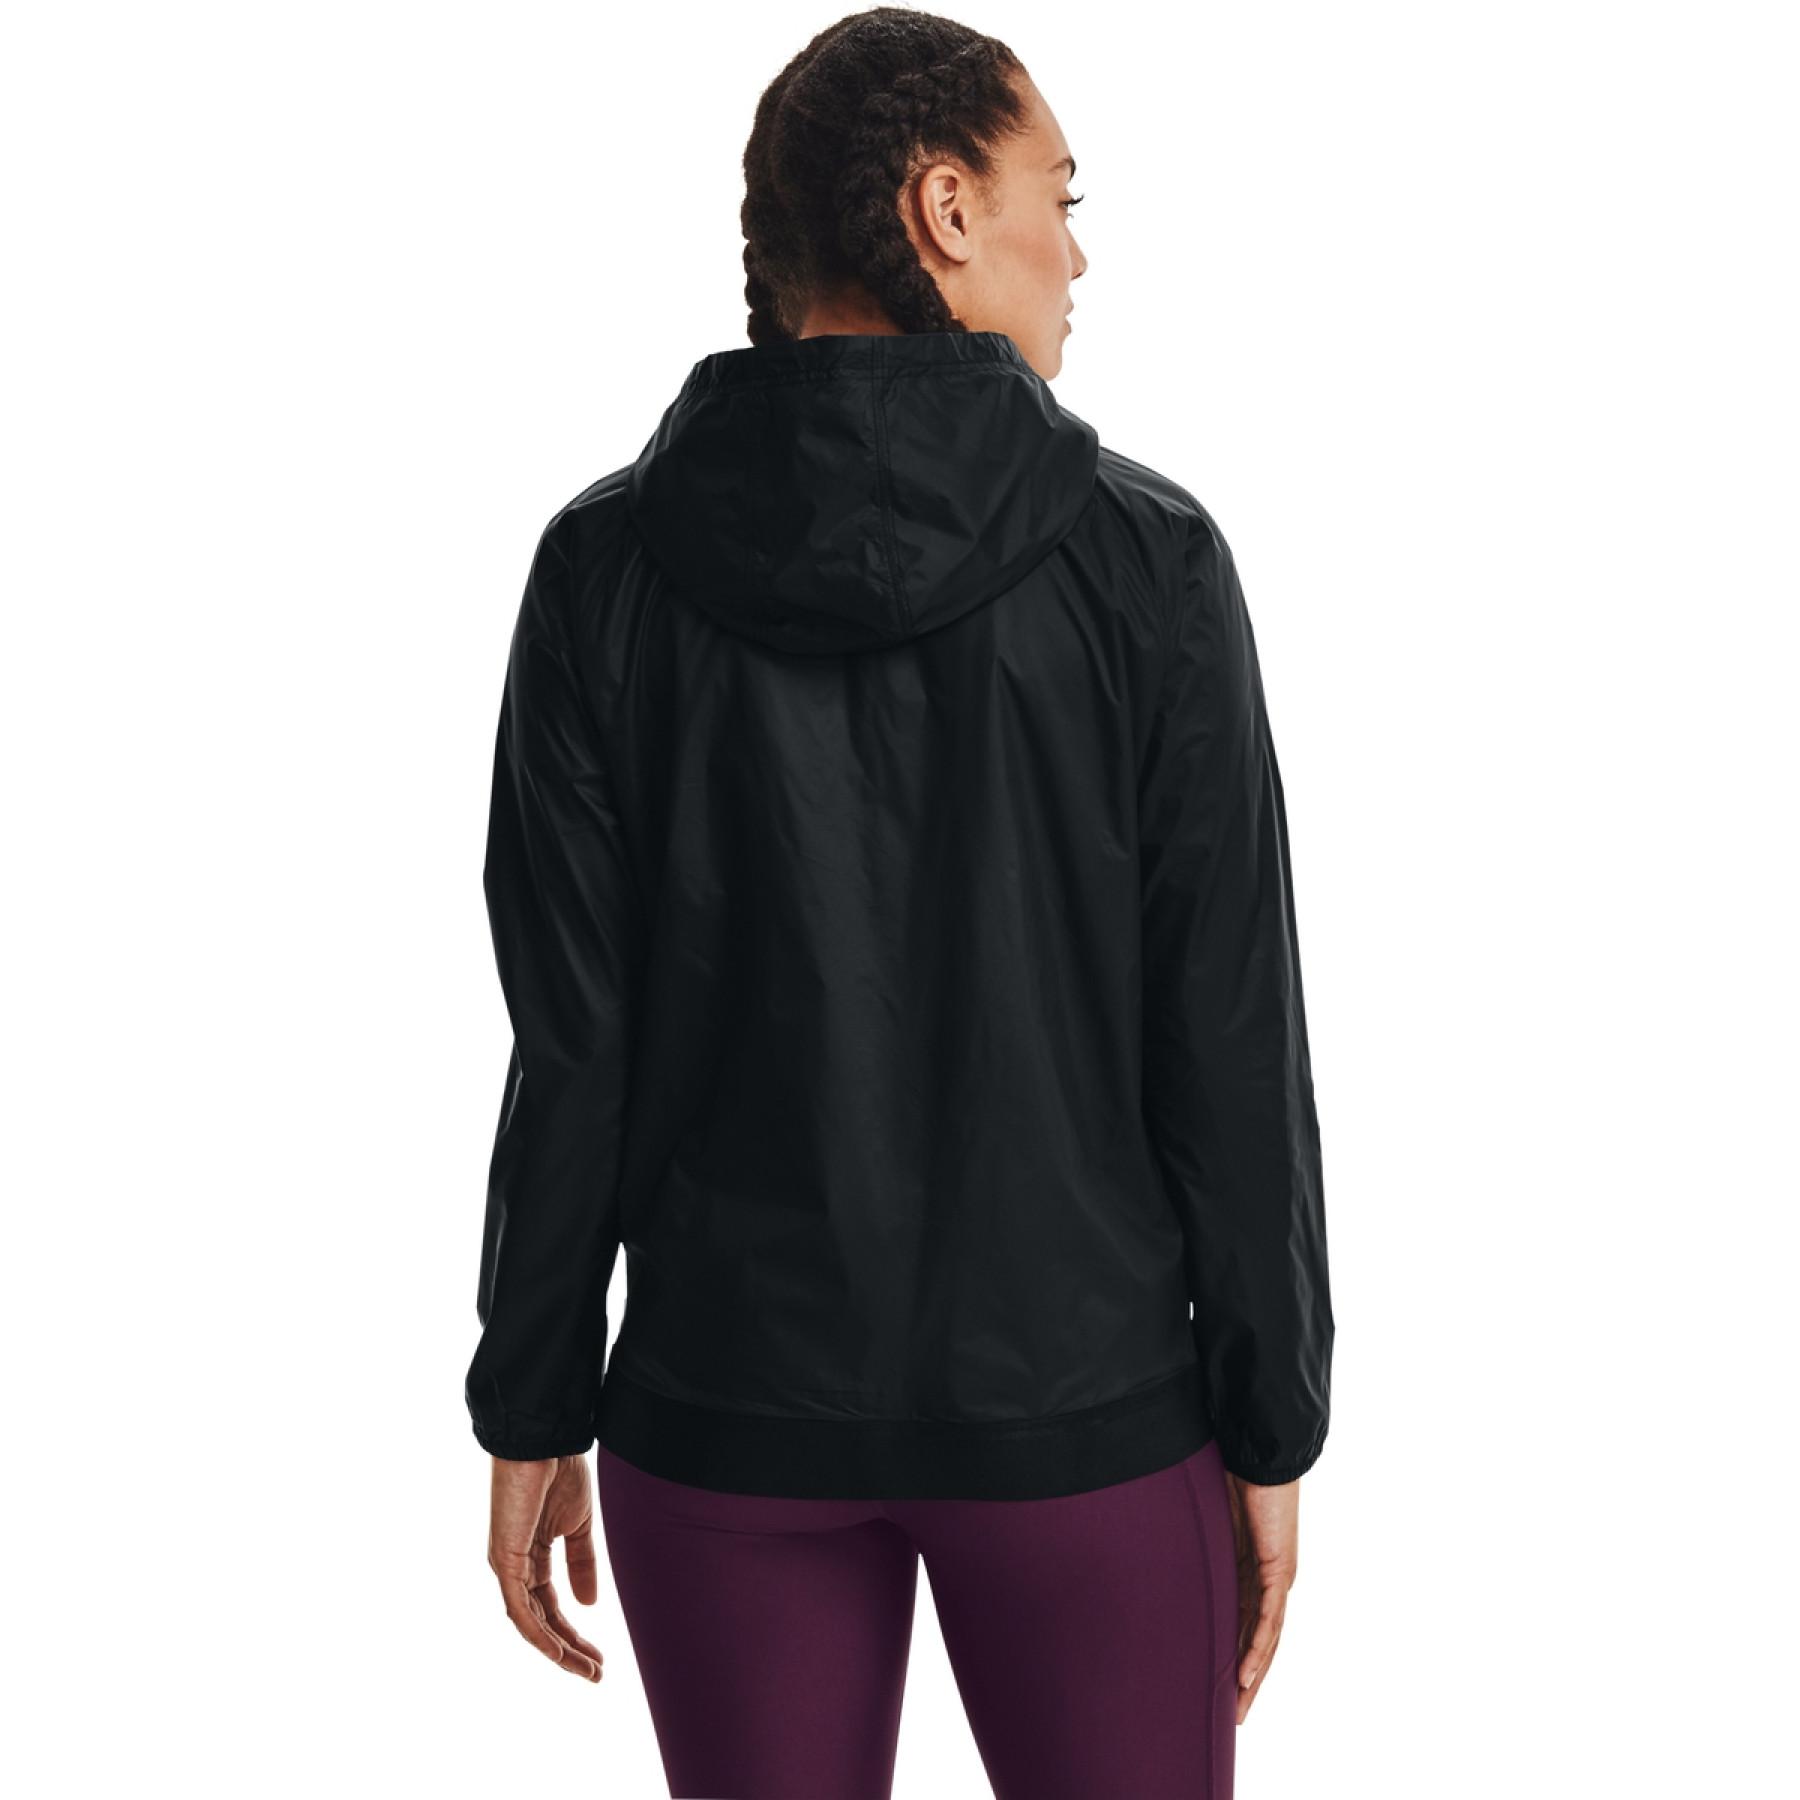 Women's jacket Under Armour entièrement zippée, tissée et réversible